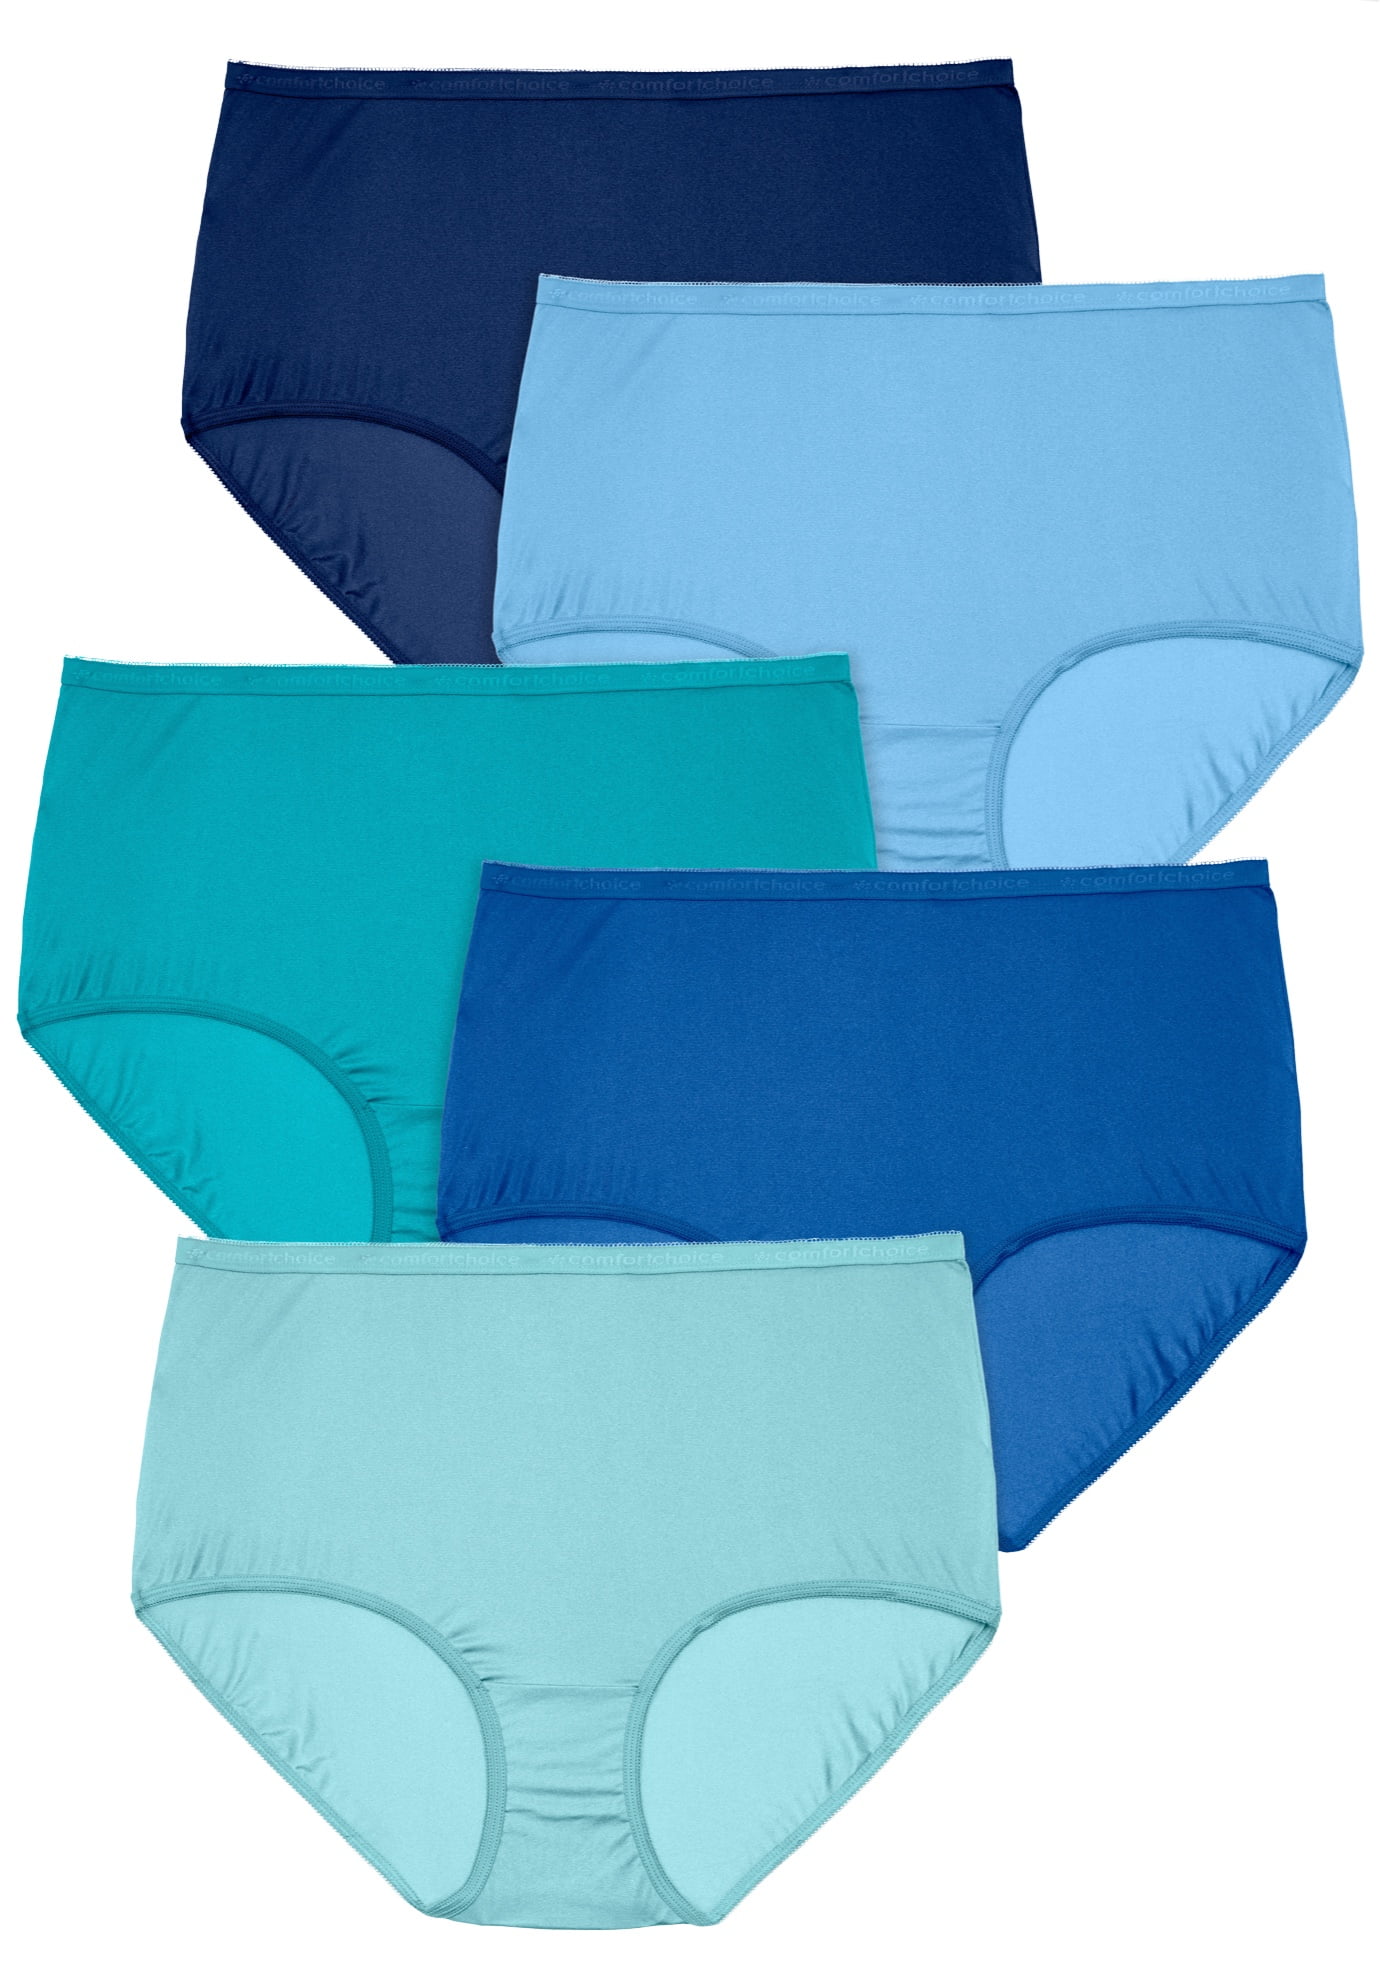 Comfort Choice Women's Plus Size Nylon Brief 5-Pack Underwear - Walmart.com